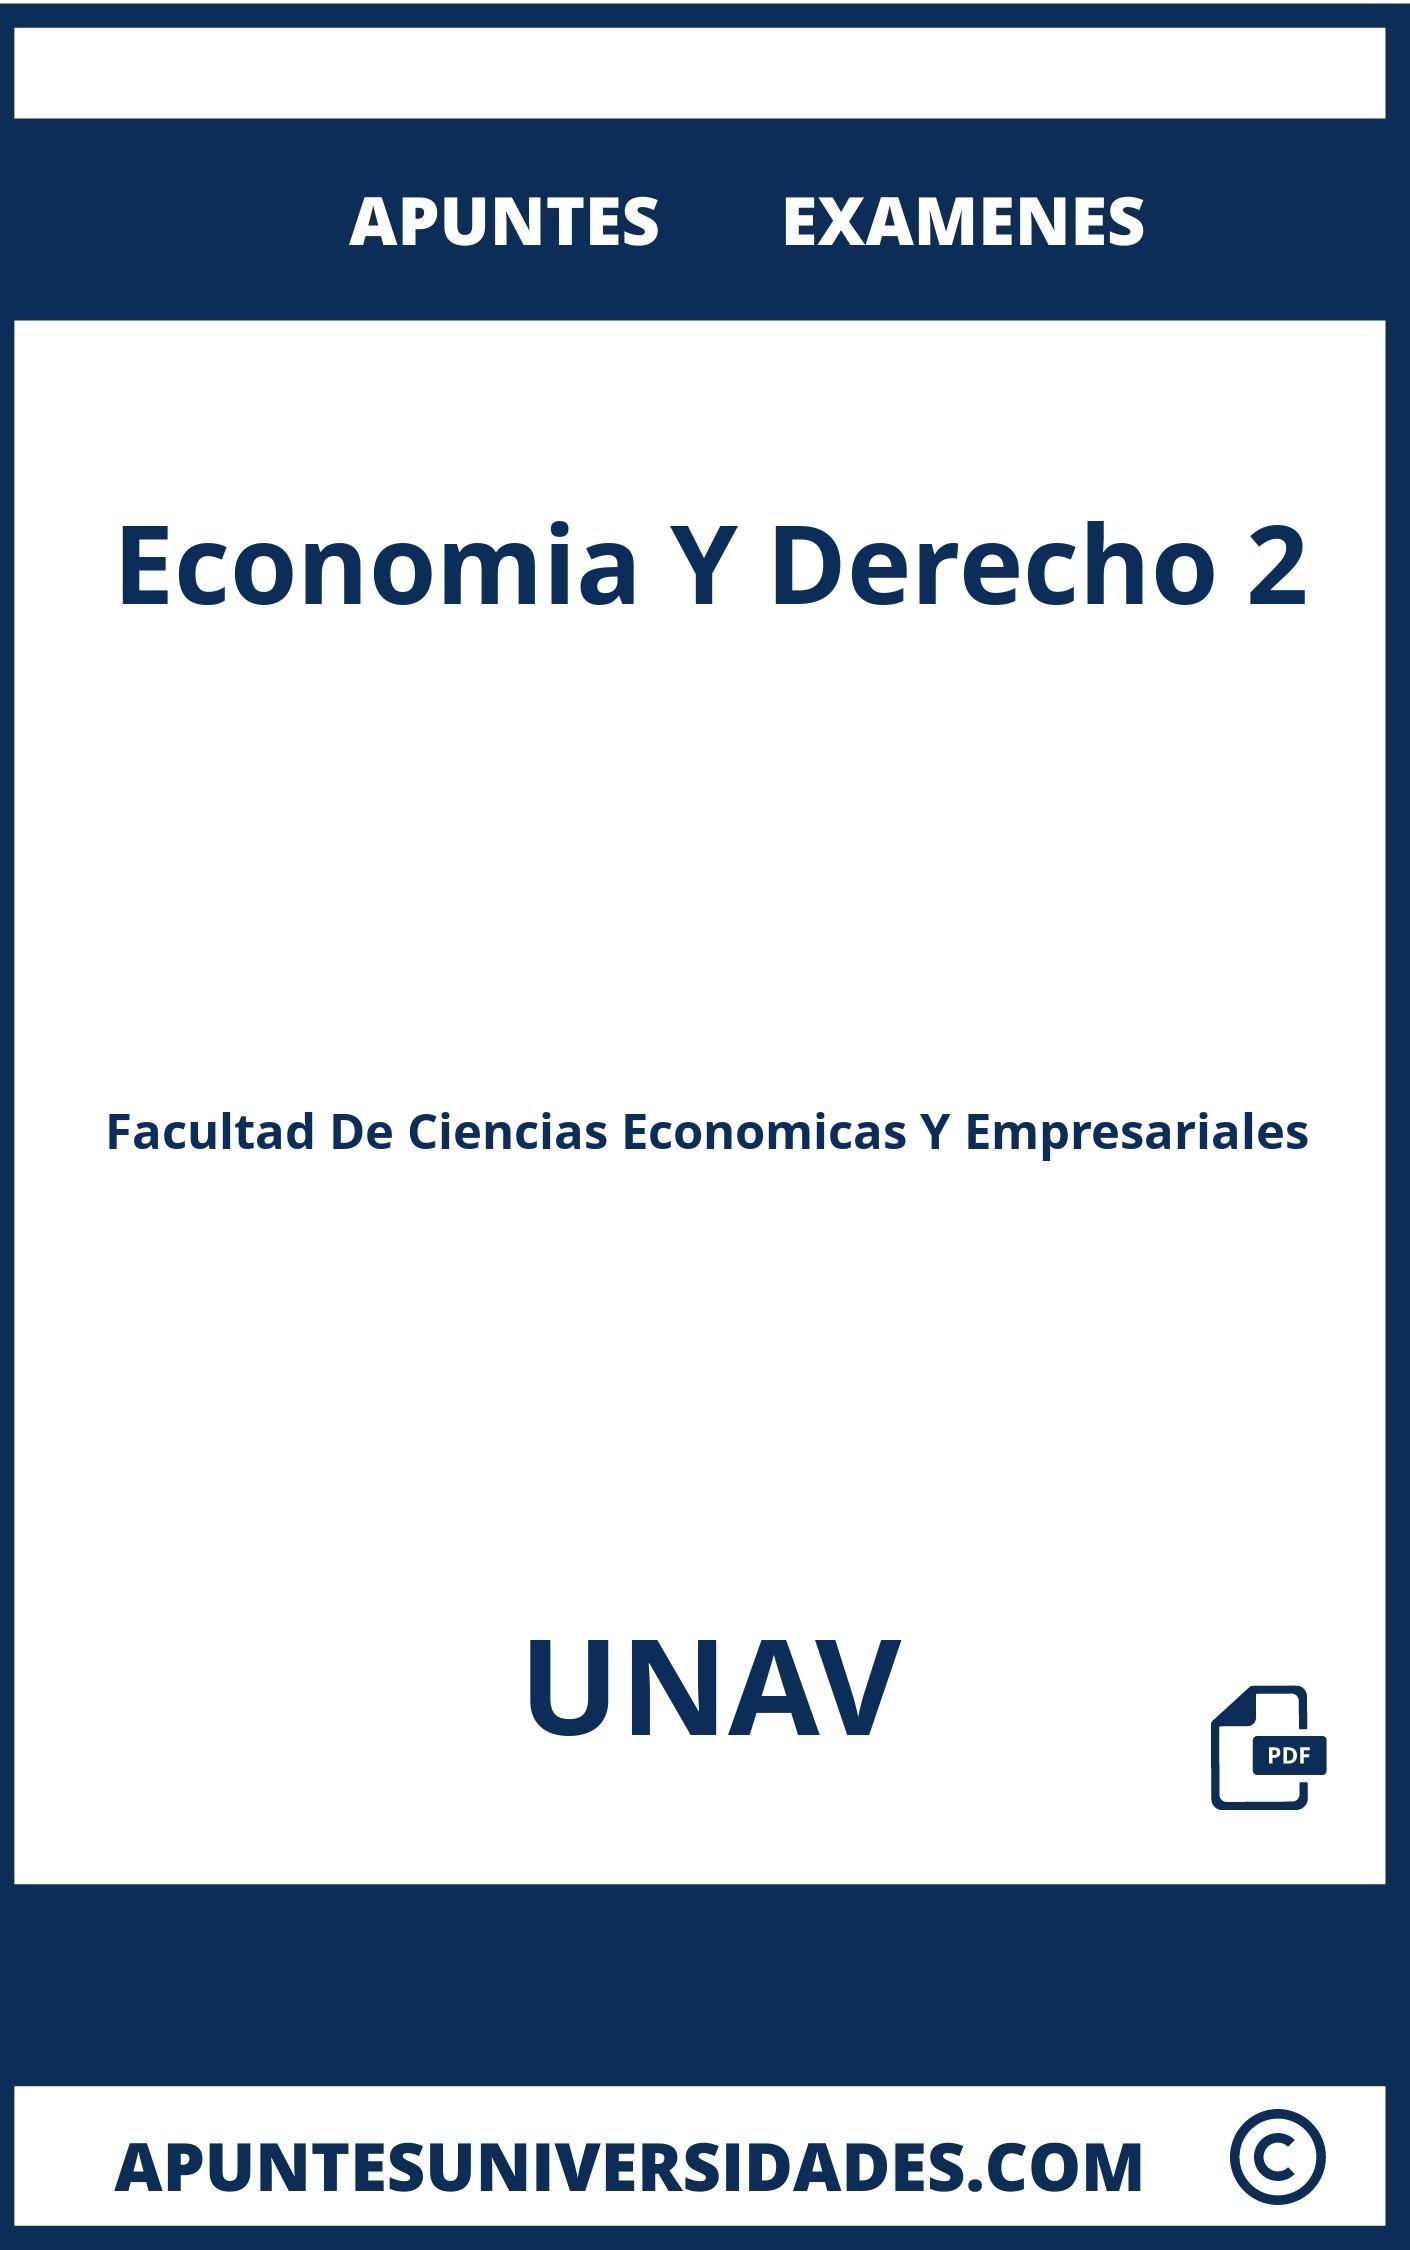 Apuntes Examenes Economia Y Derecho 2 UNAV